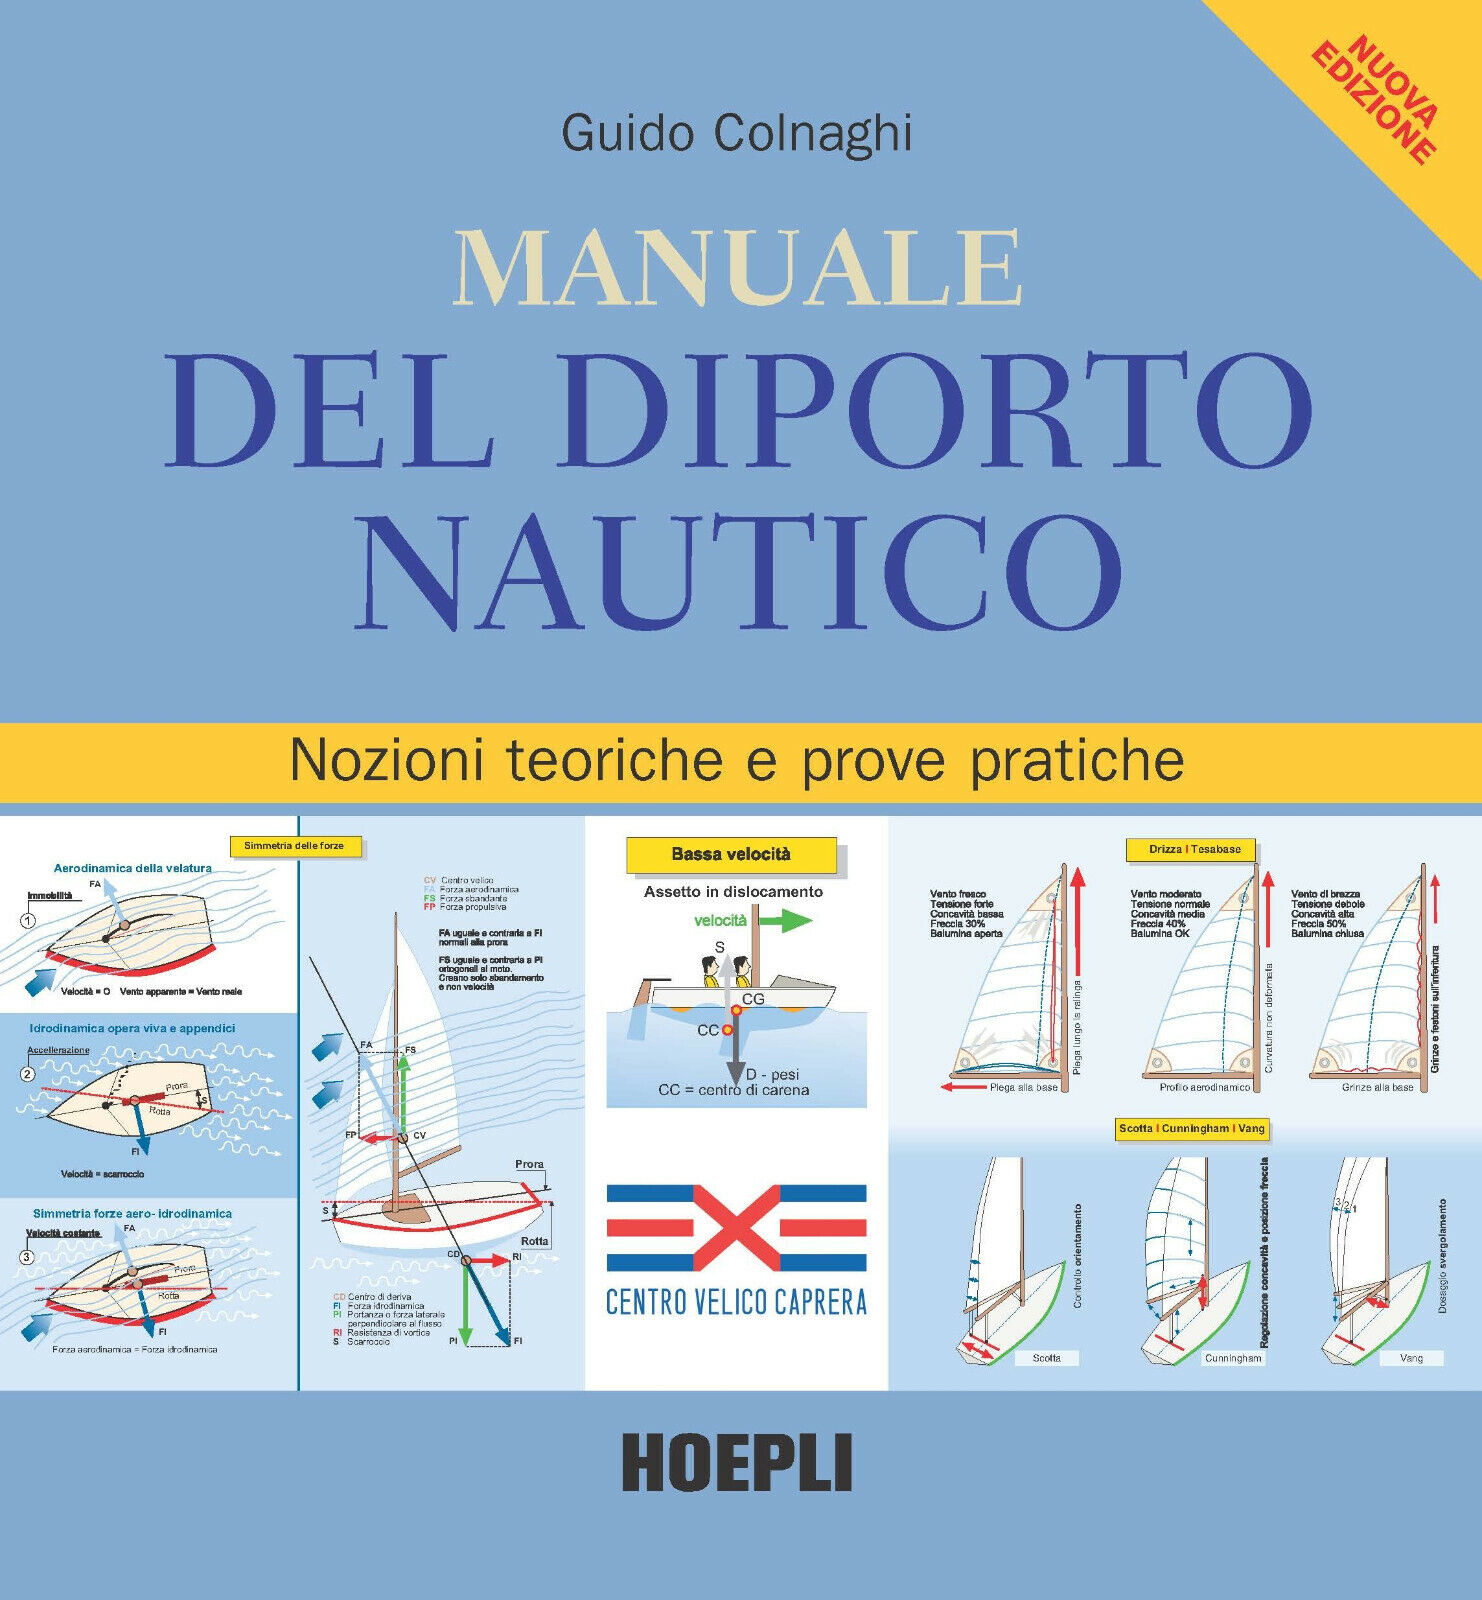 Manuale del diporto nautico - Guido Colnaghi - hoepli, 2018